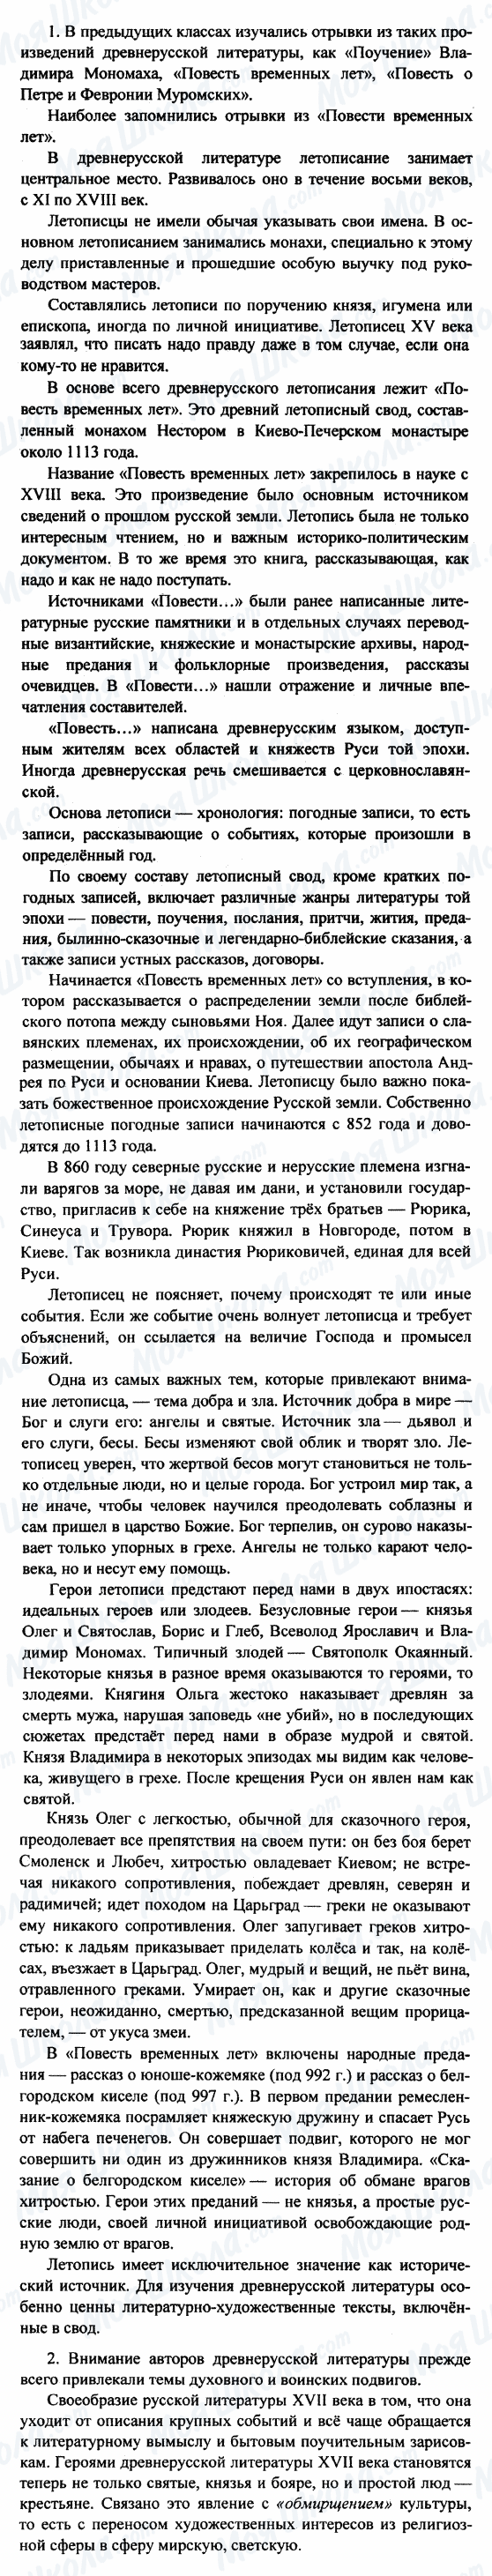 ГДЗ Російська література 8 клас сторінка 1-2